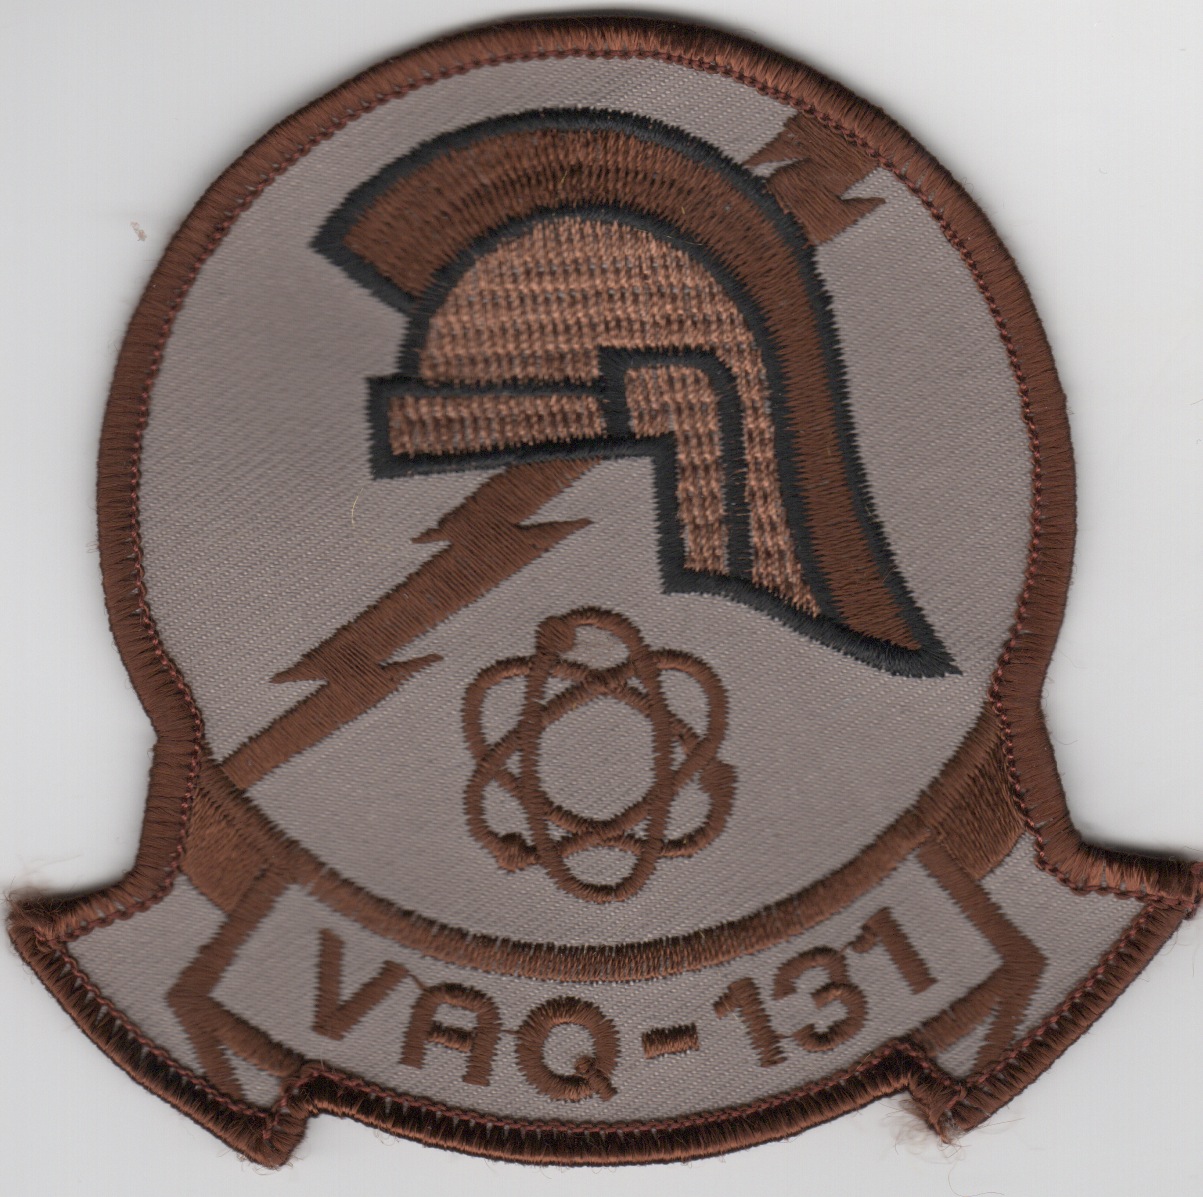 VAQ-131 Squadron Patch (Des)